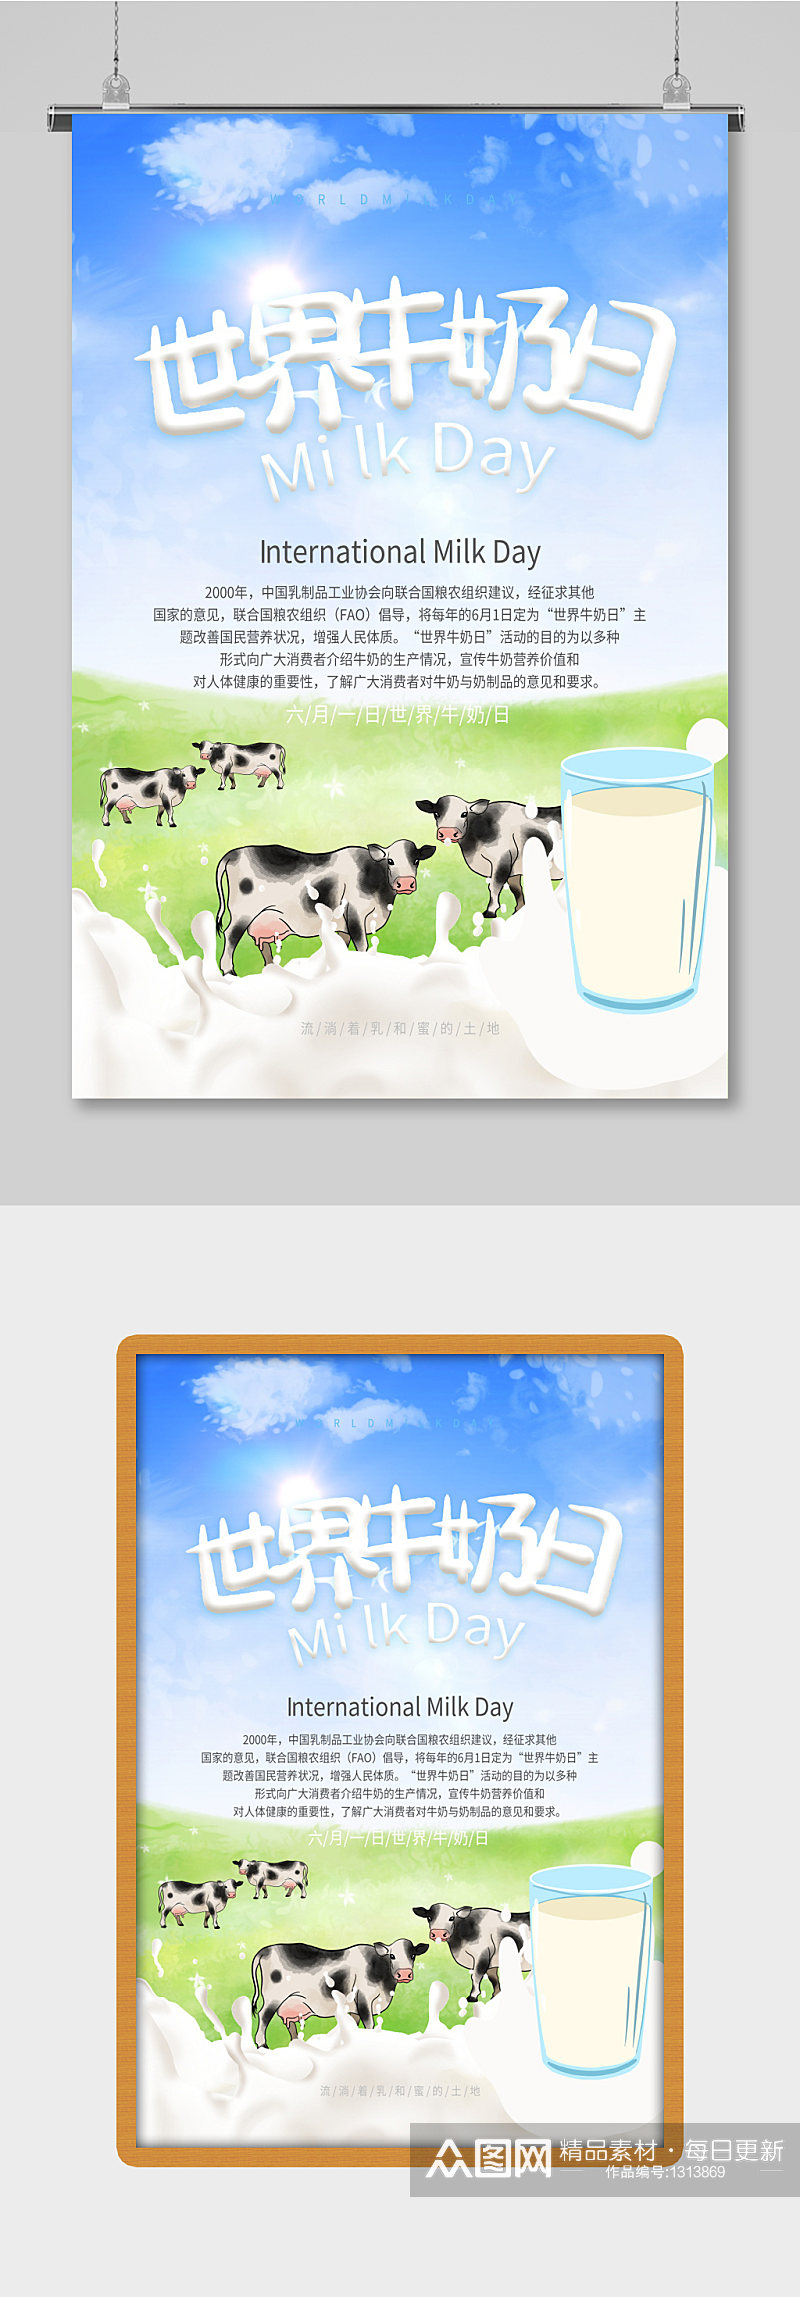 淡蓝色世界牛奶日 国际世界牛奶日海报素材